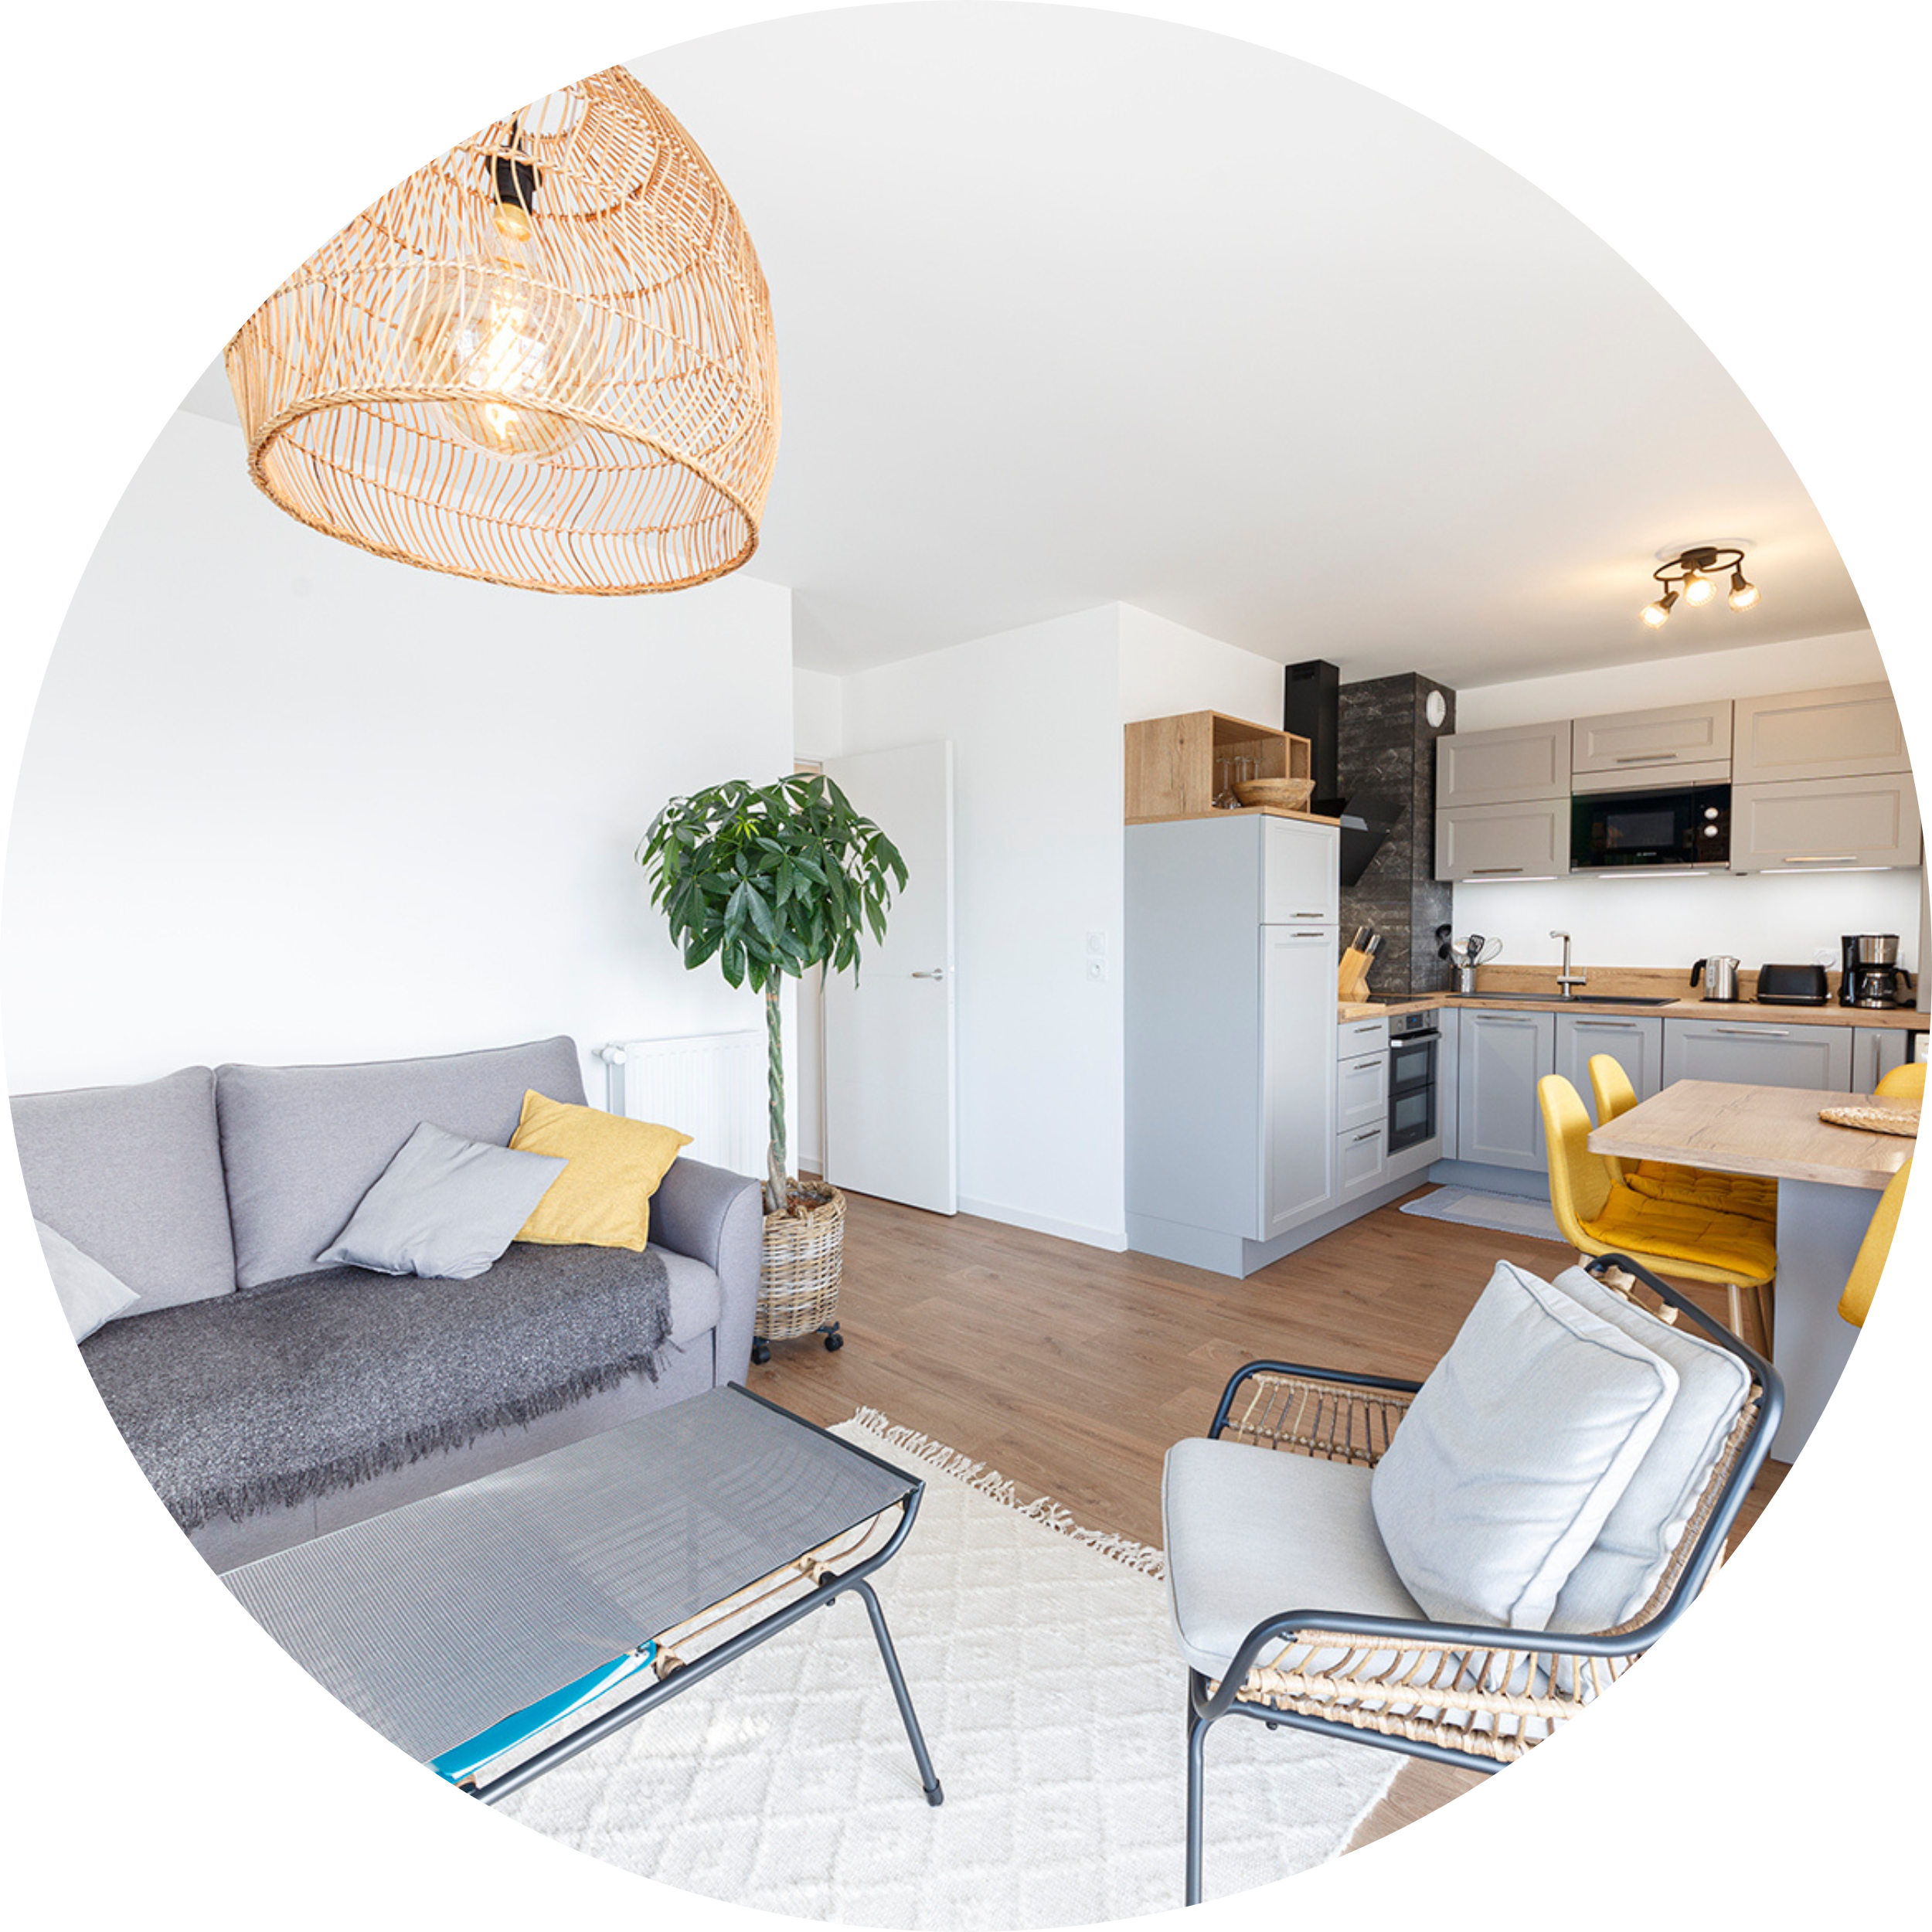 Location hébergement airbnb à Dinard - Conciergerie Dinard